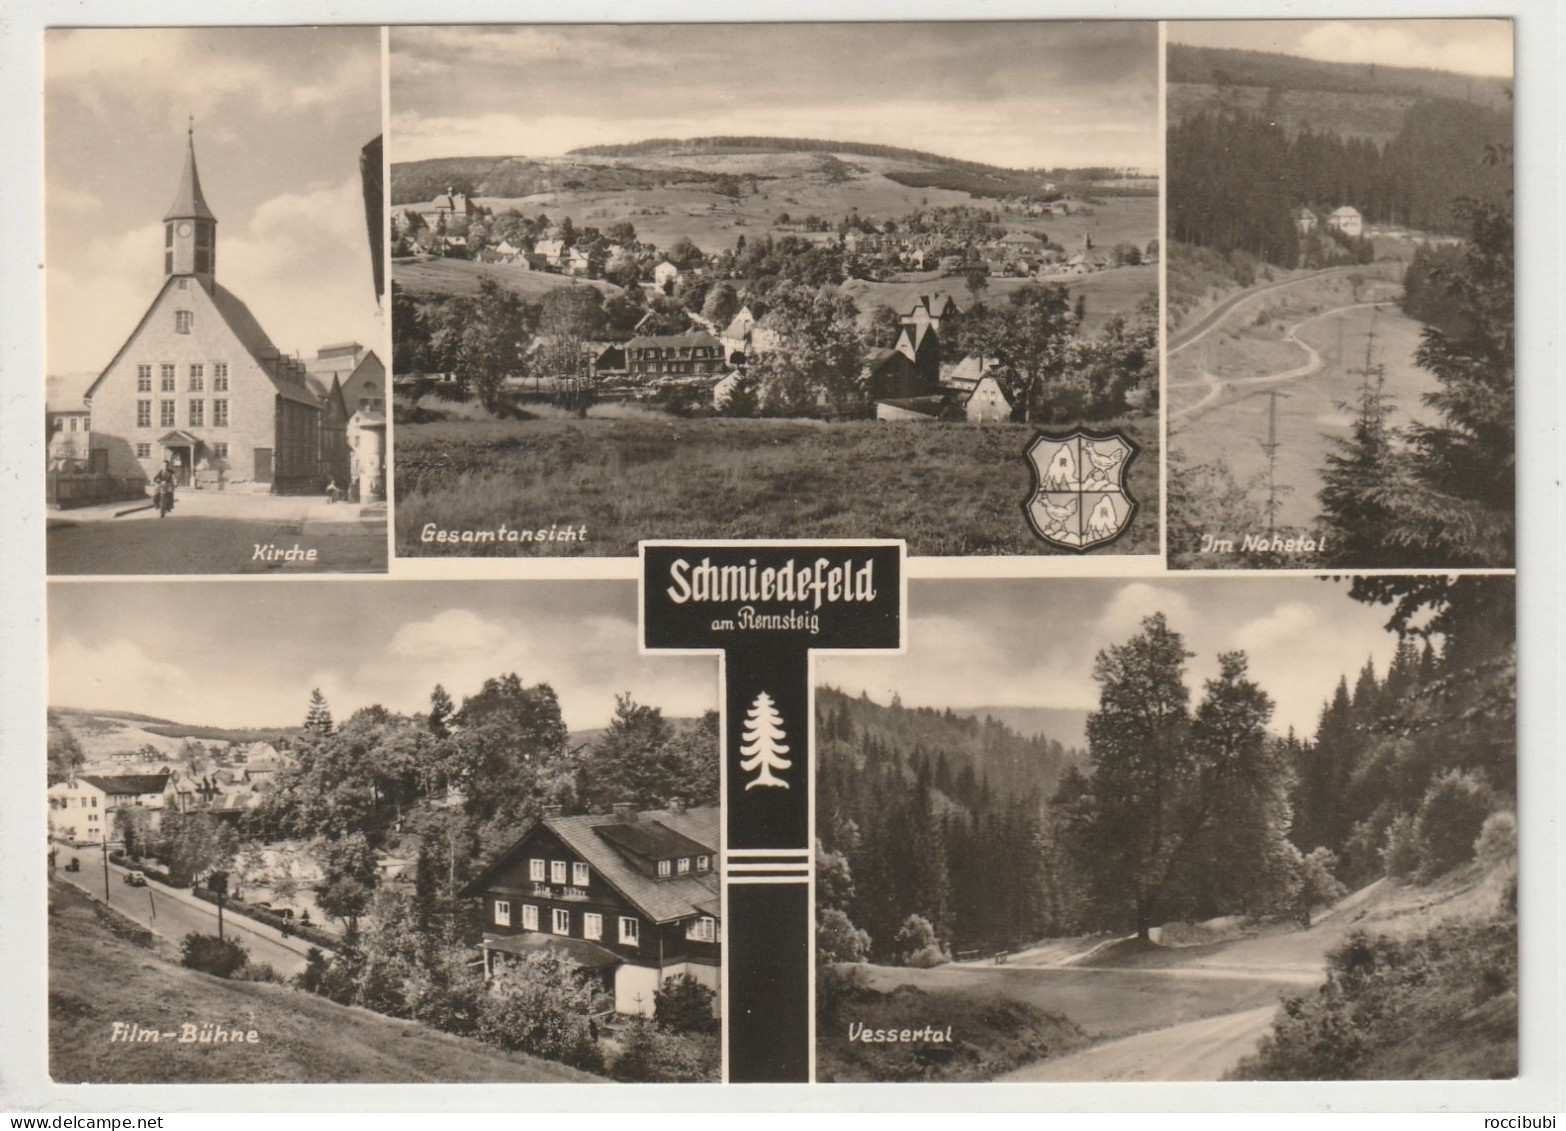 Schmiedefeld - Schmiedefeld